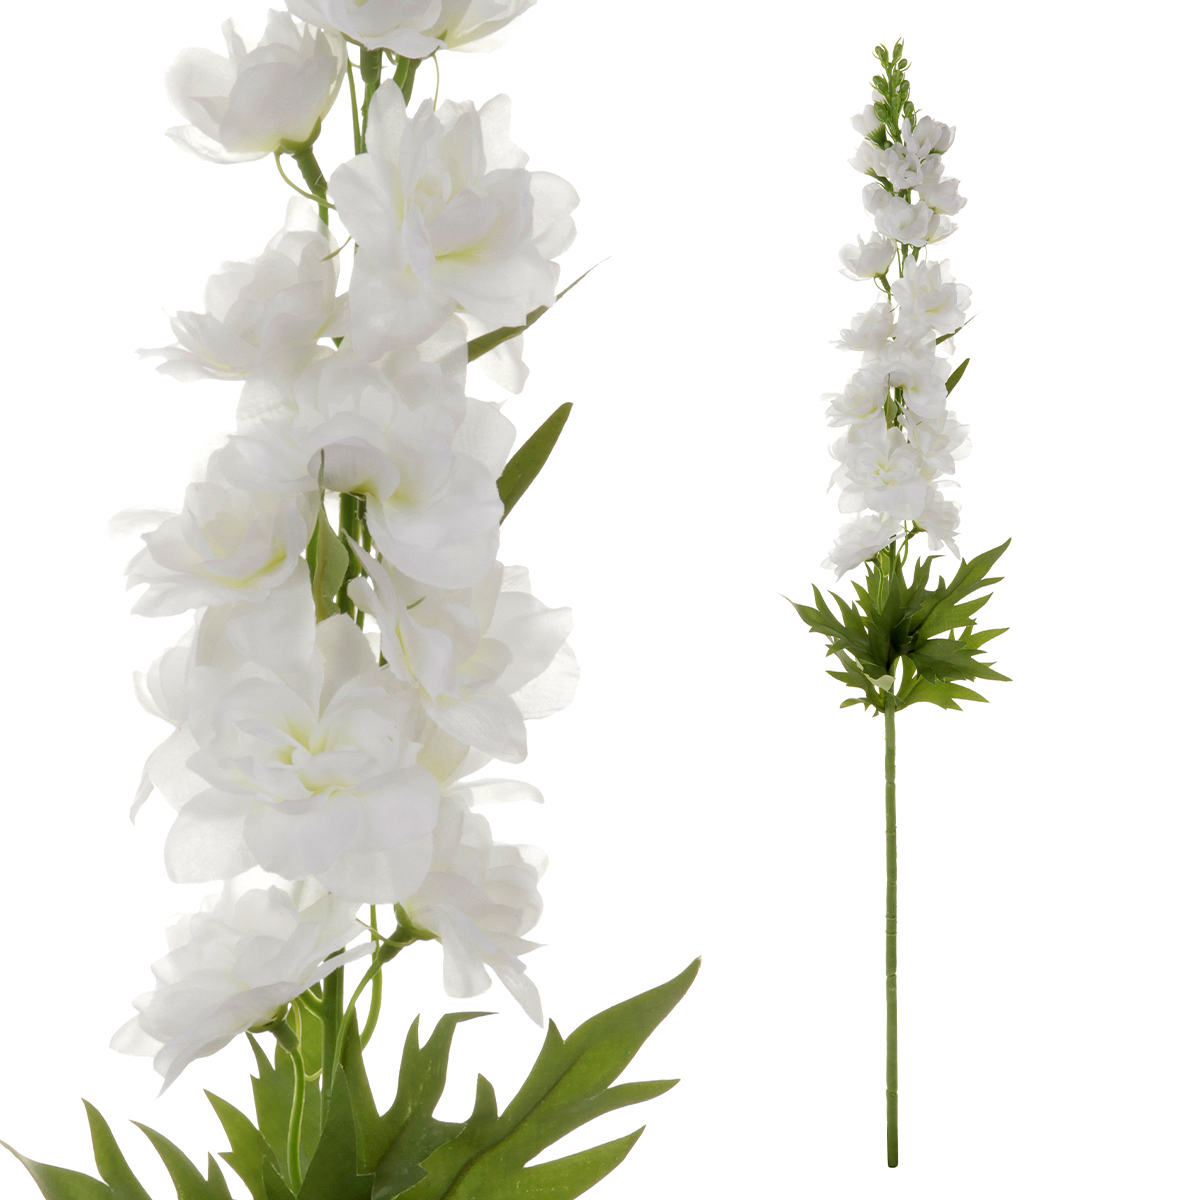 Ostrožka - umělá květina, barva bílá.